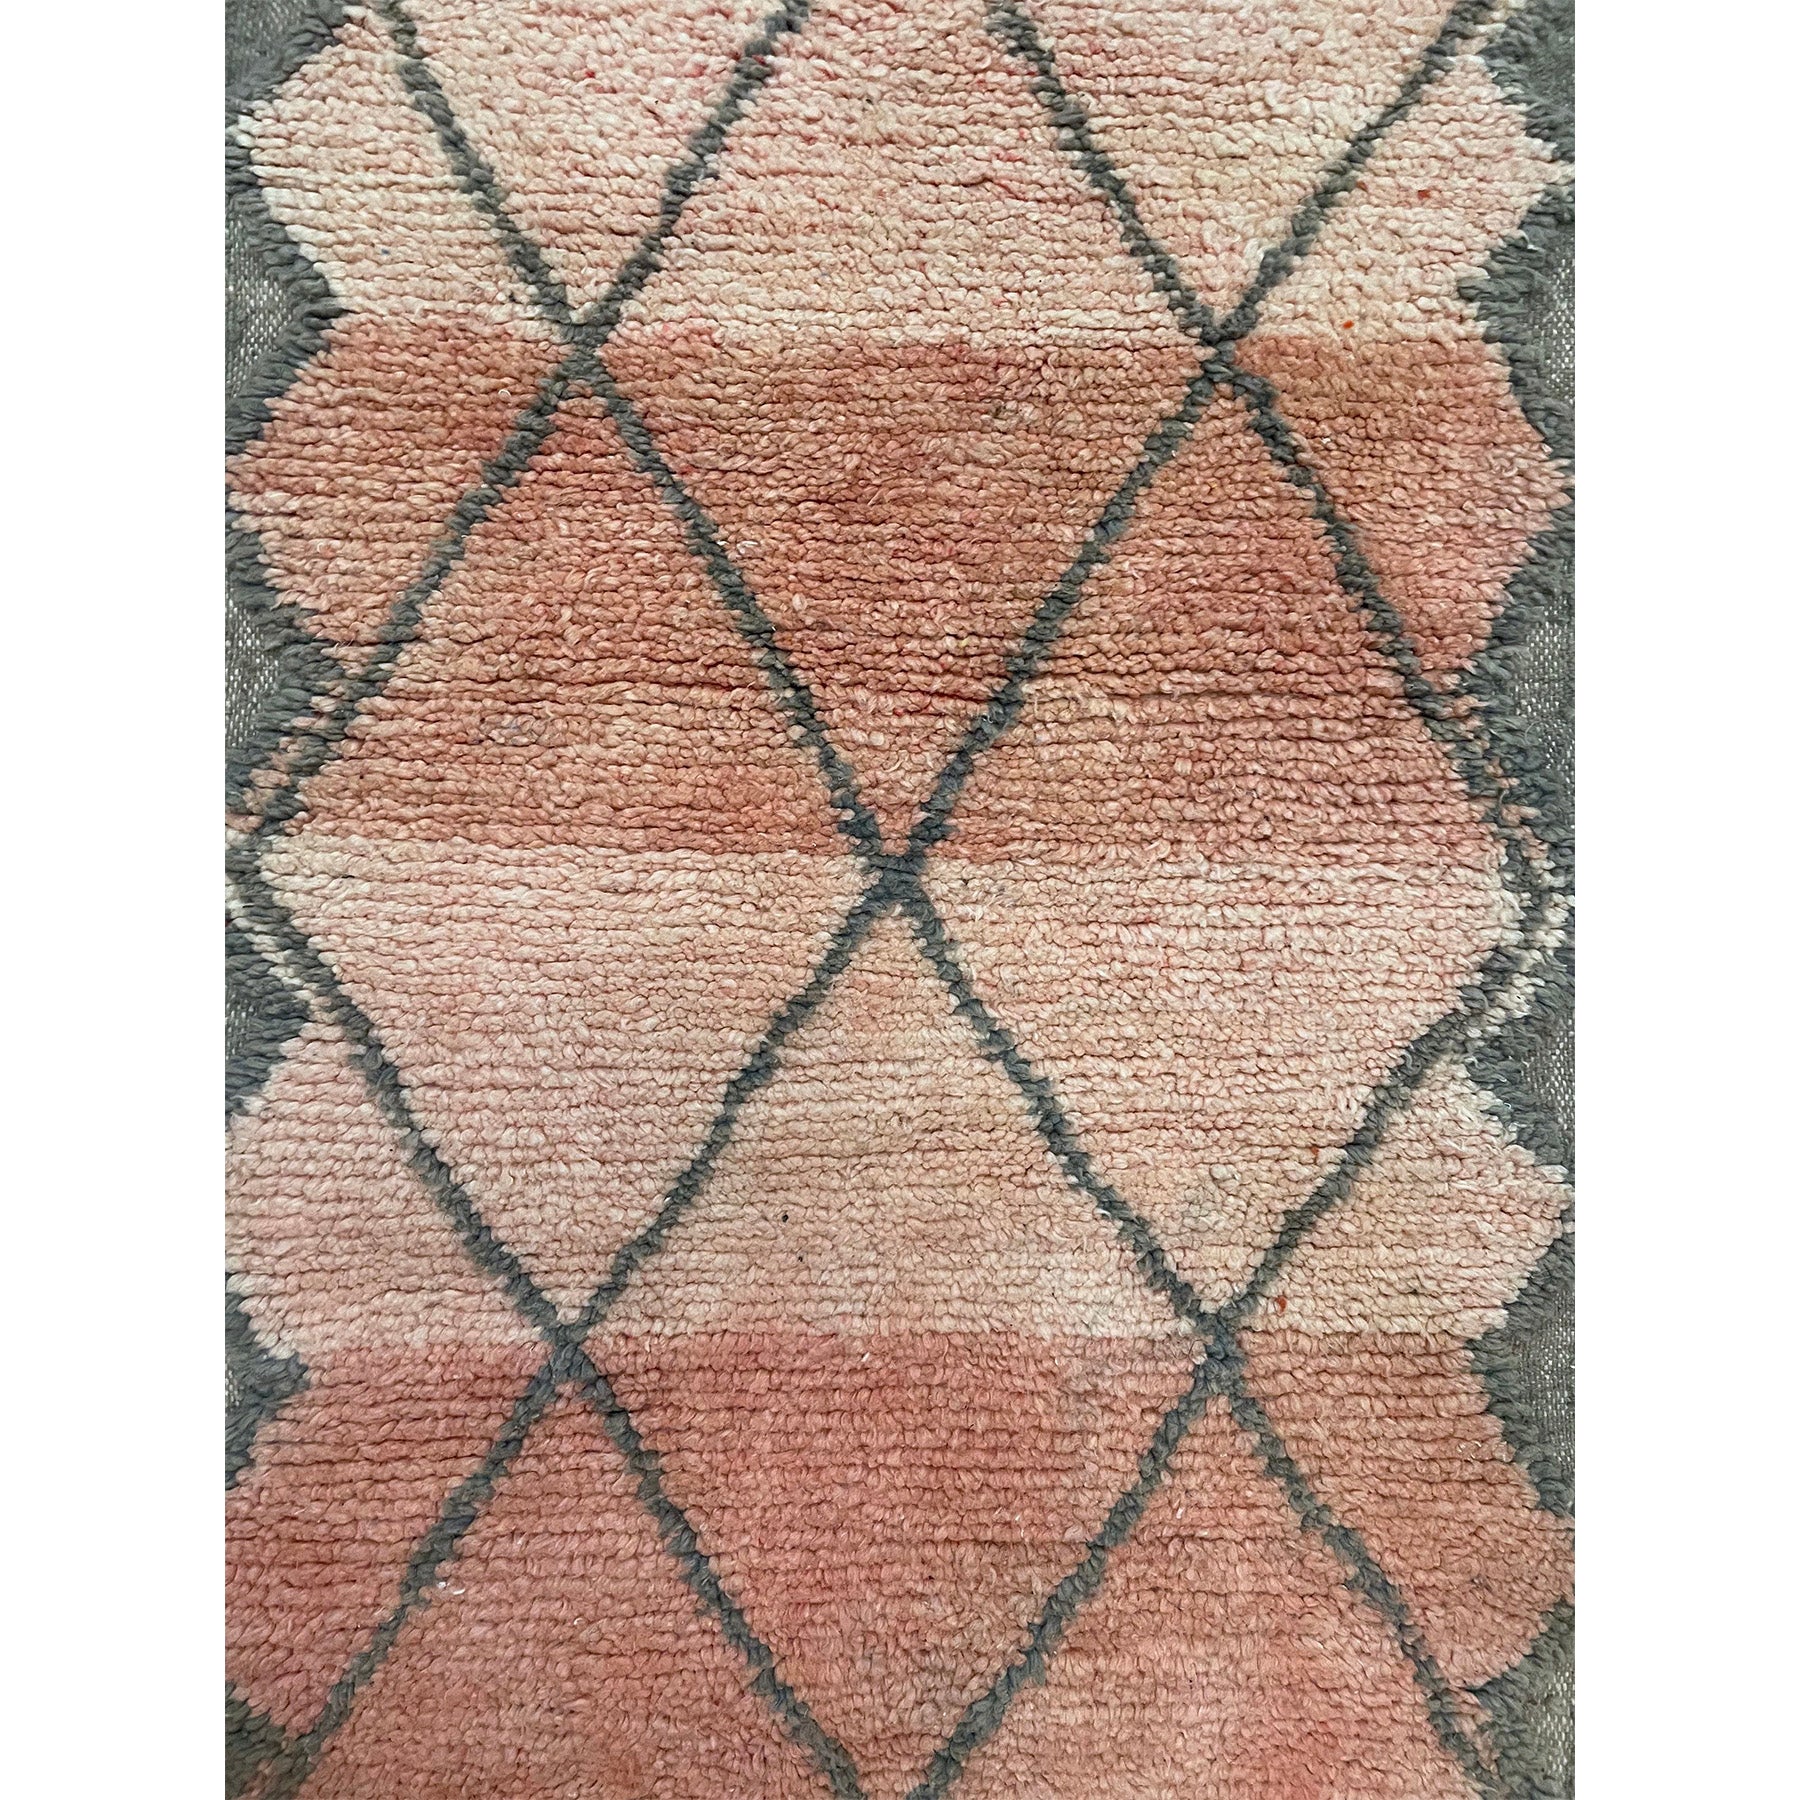 Blush pink Moroccan runner rug with diamond pattern - Kantara | Moroccan Rugs